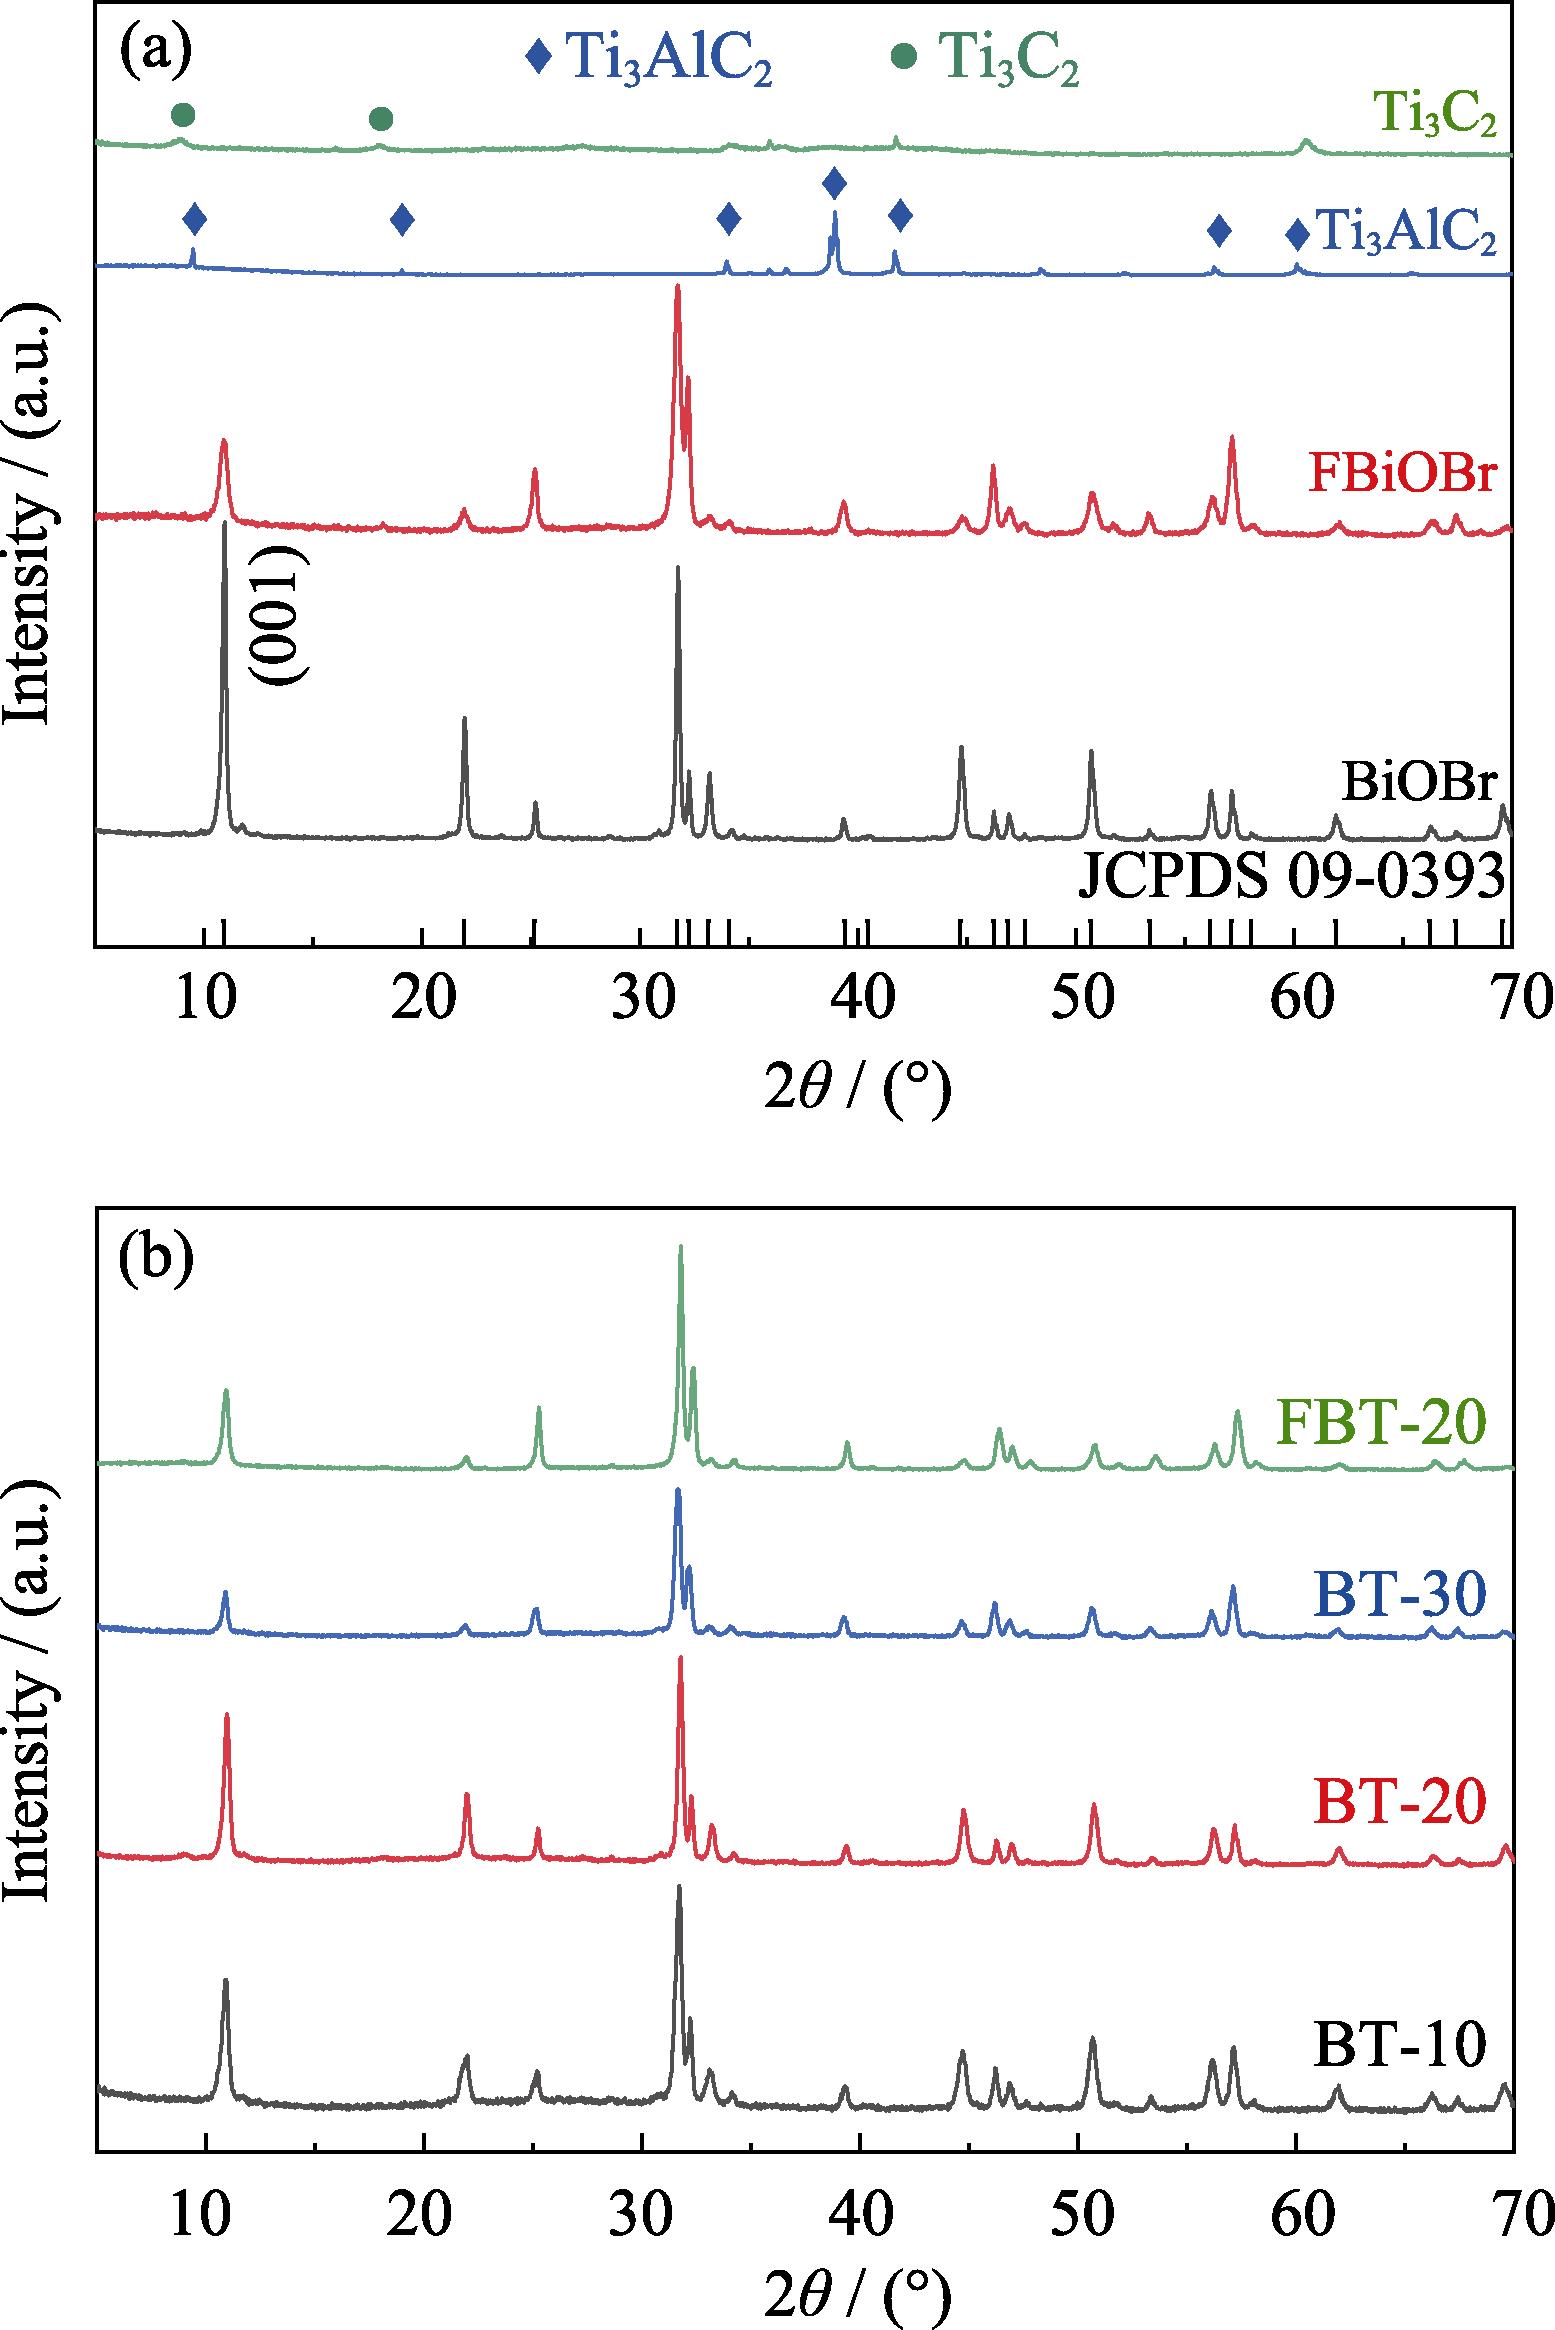 XRD patterns of samples Ti3C2, Ti3AlC2, FBiOBr, BiOBr (a) and samples FBT-20, BT-x (b)